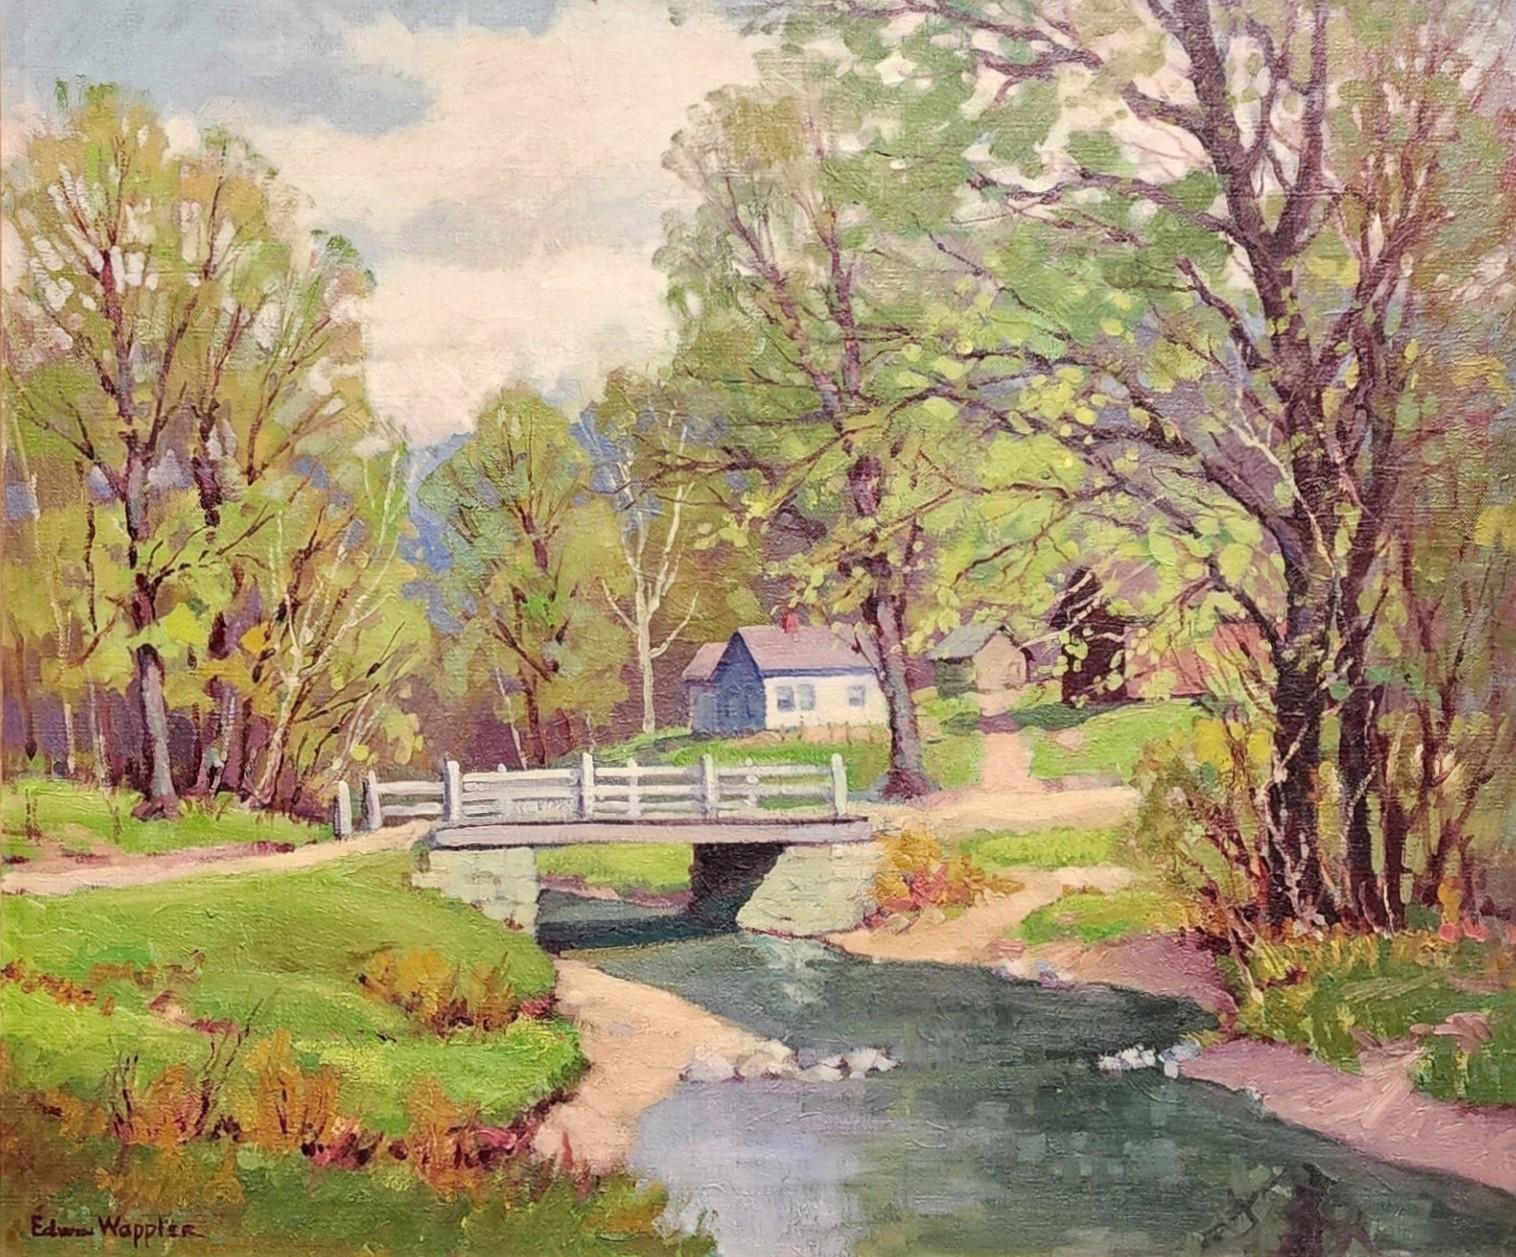 Along The Creek, vers les années 1920 - 1930, (Possiblement) Paysage rural ancien, Tennessee - Marron Landscape Painting par Edwin Wappler